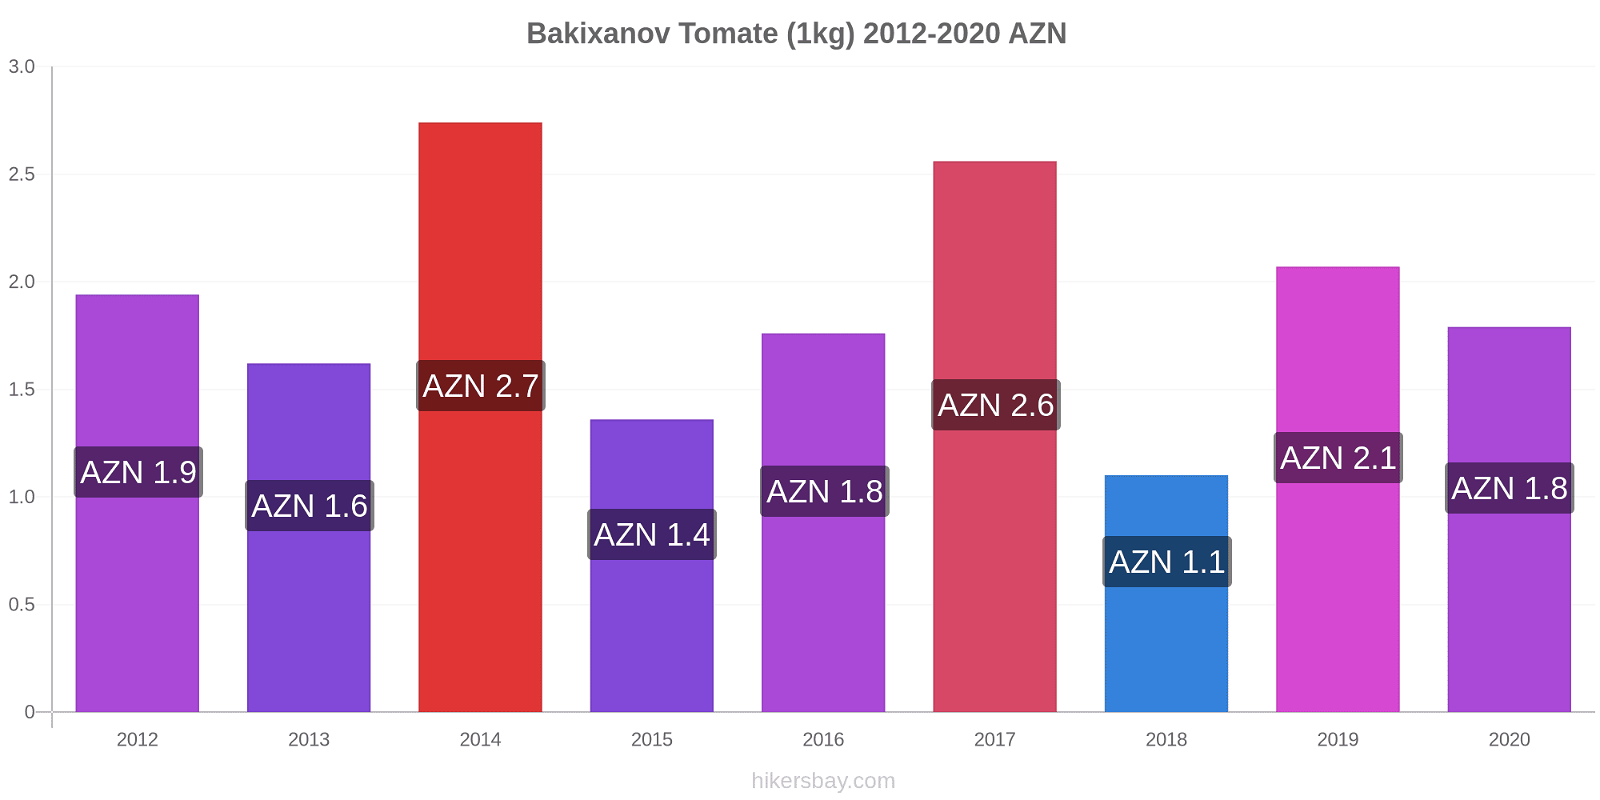 Bakixanov changements de prix Tomate (1kg) hikersbay.com